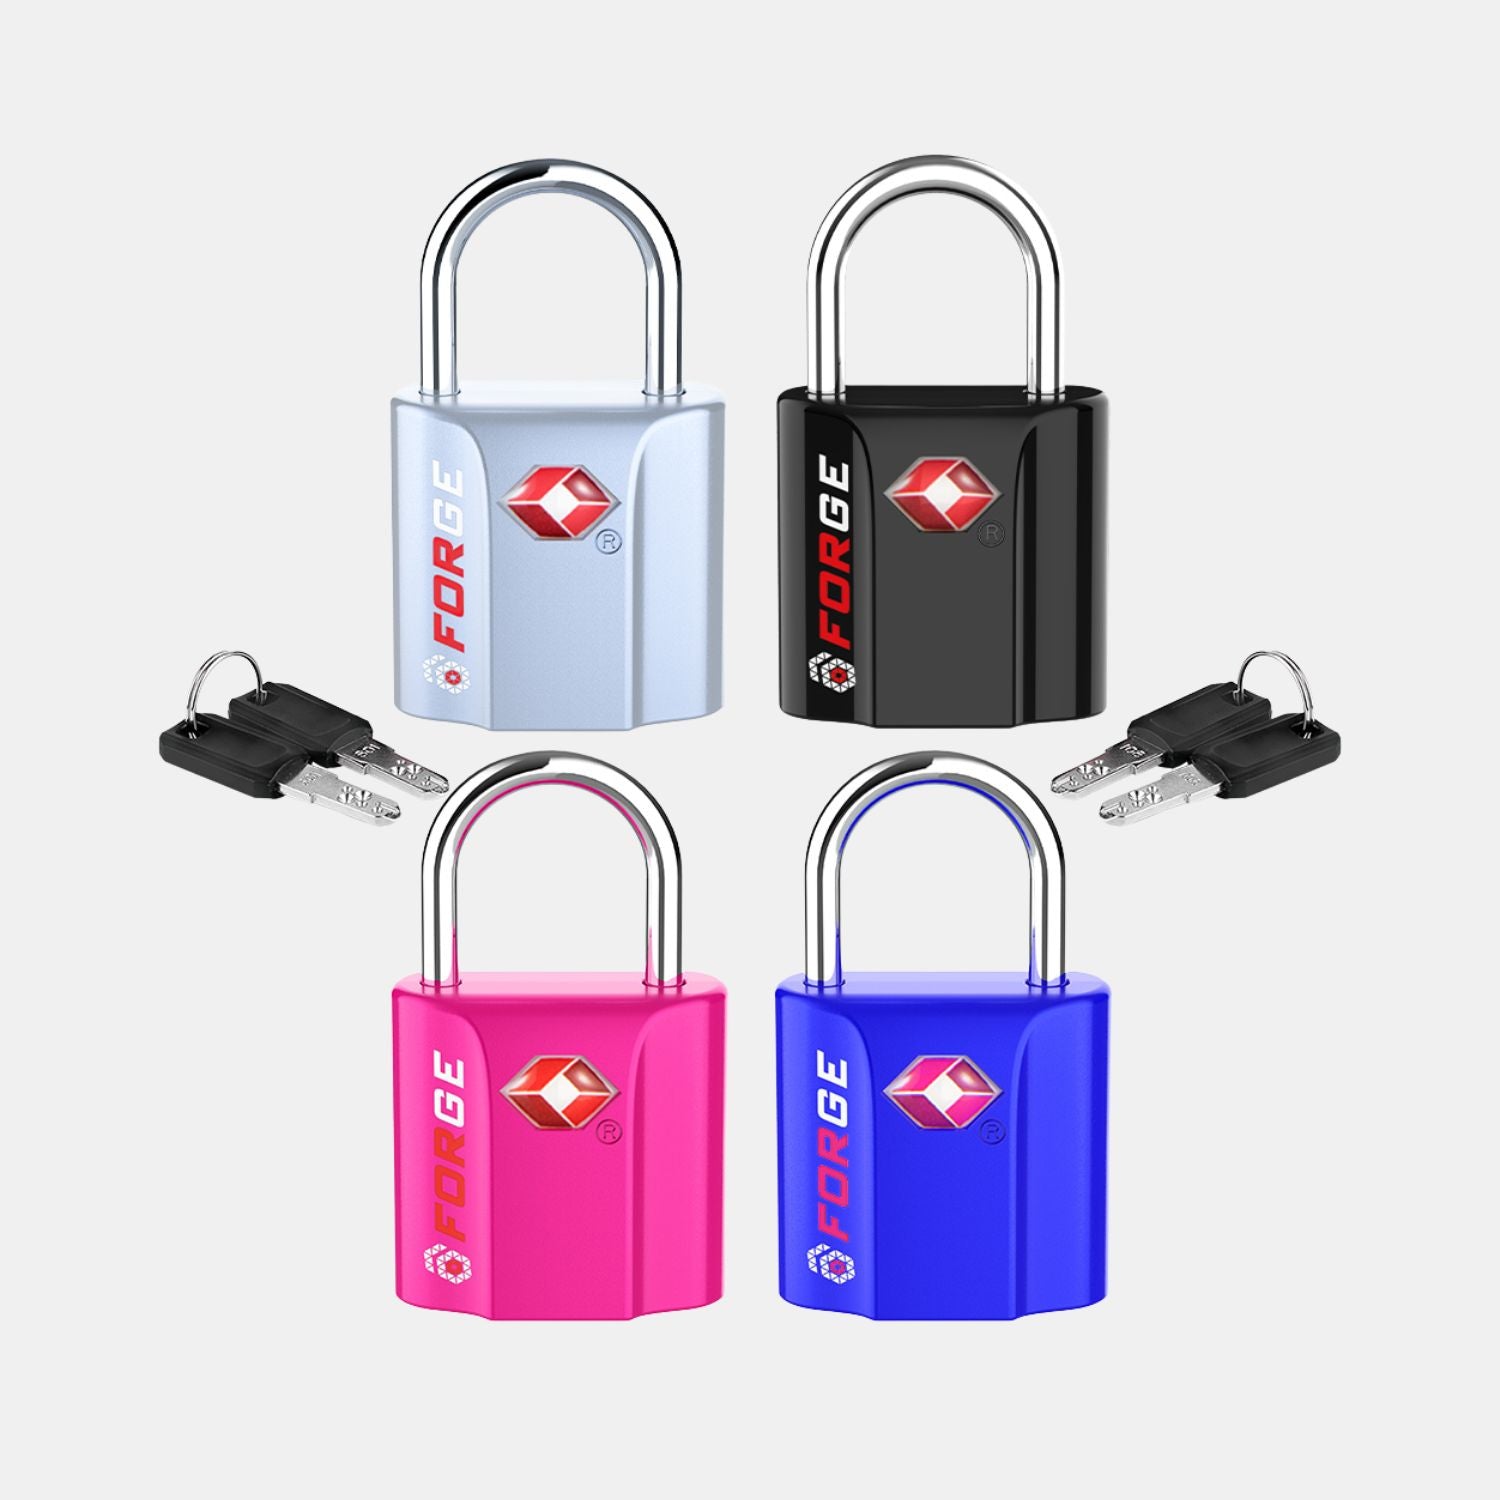 TSA Approved Dimple Key Luggage Lock - TSA006 Key, Ultra-Secure Small Size Lock.